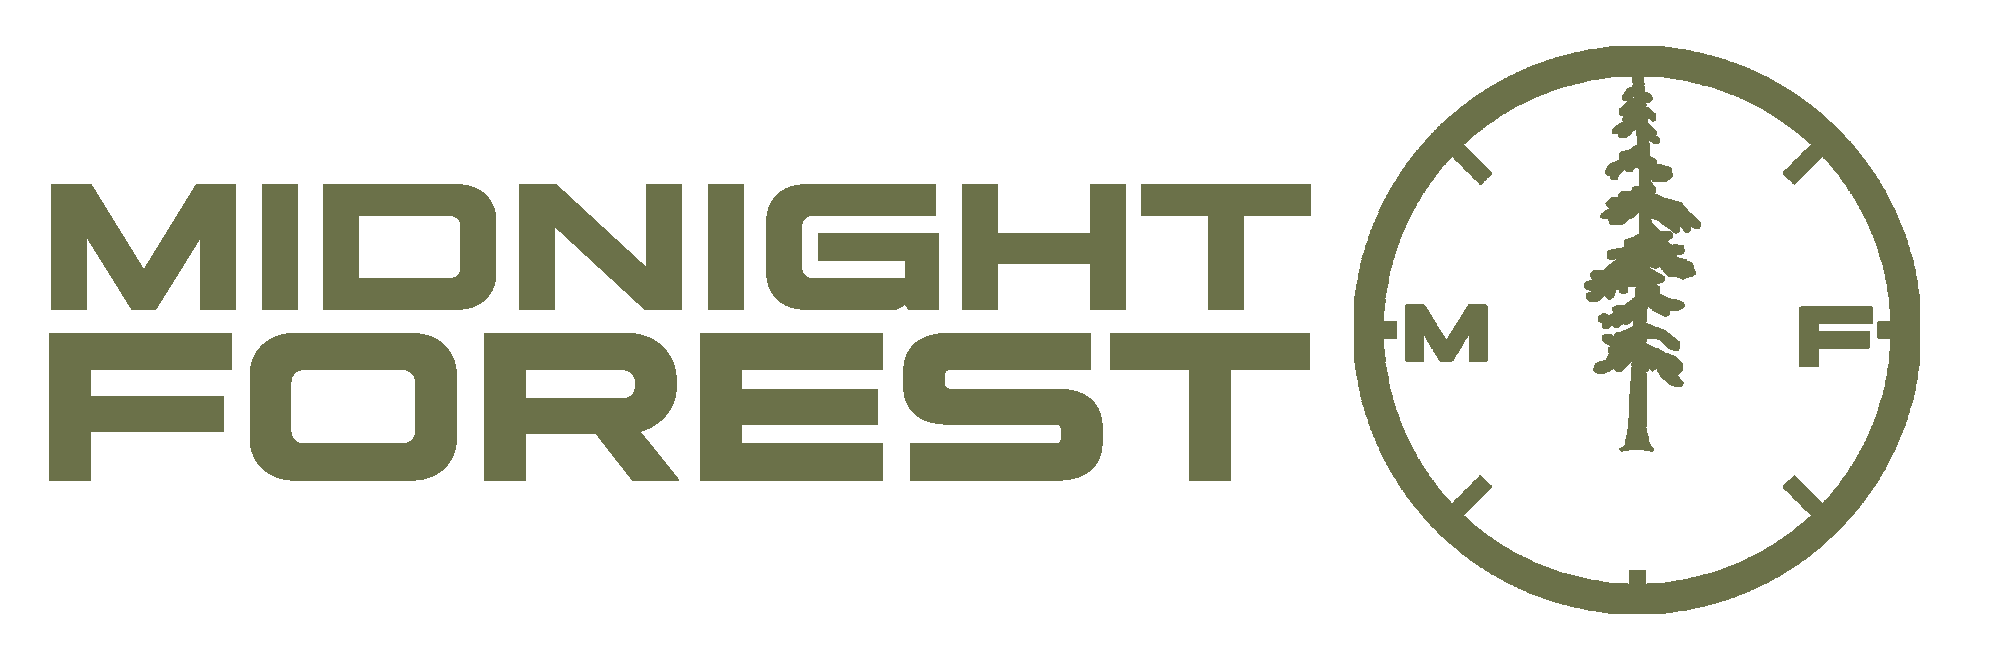 Midnight Forest